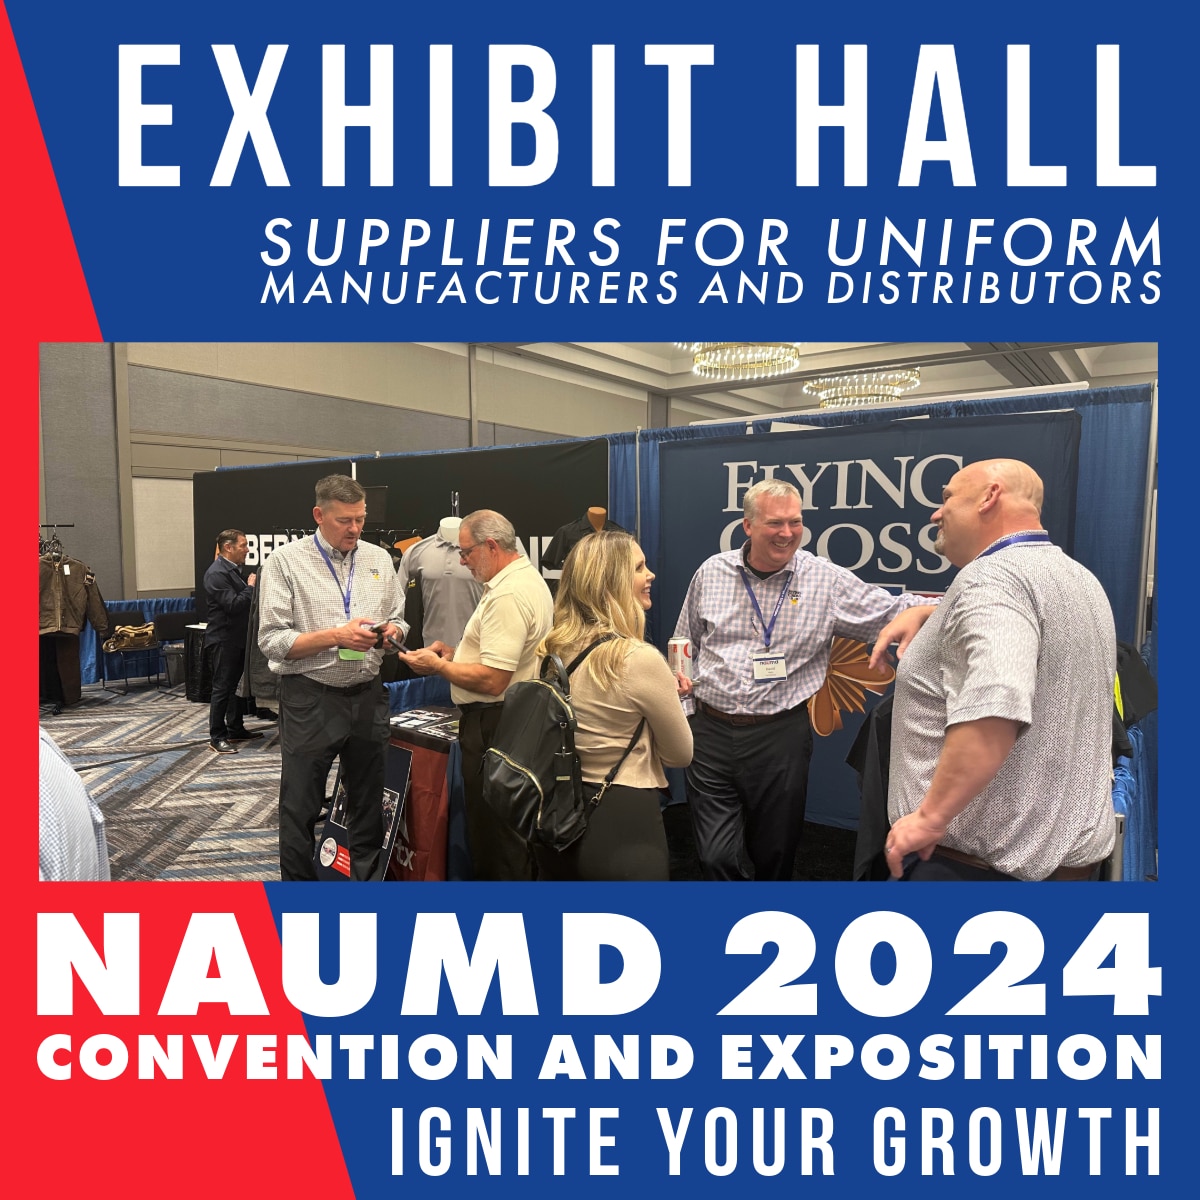 Home - NAUMD, Network Association of Uniform Manufacturers